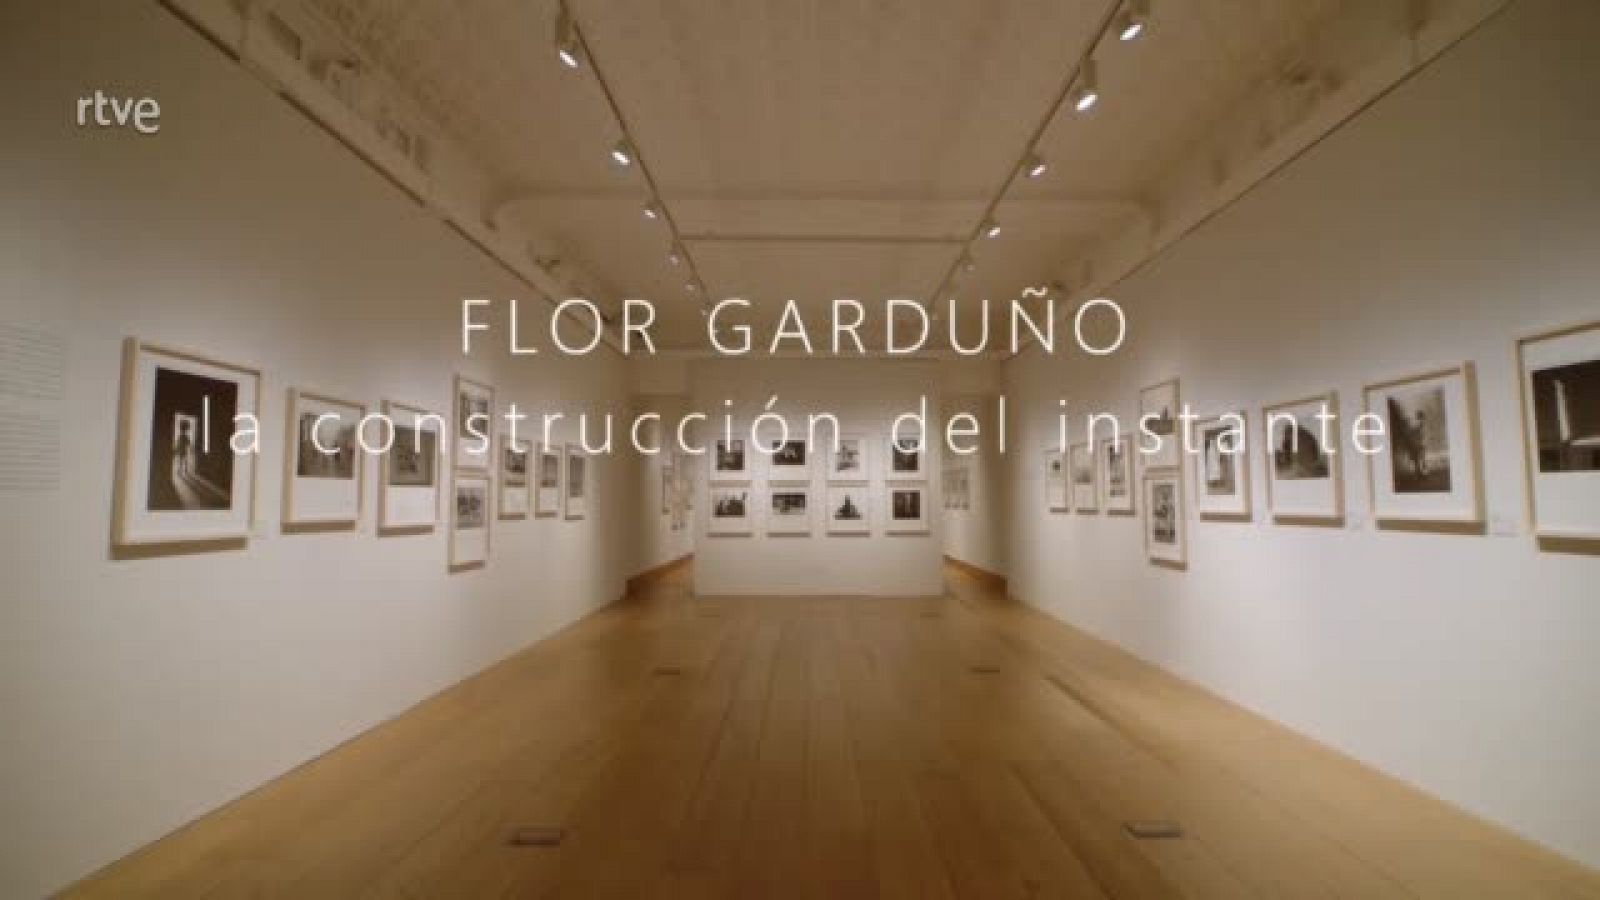 Flor Garduño: La construcción del instante